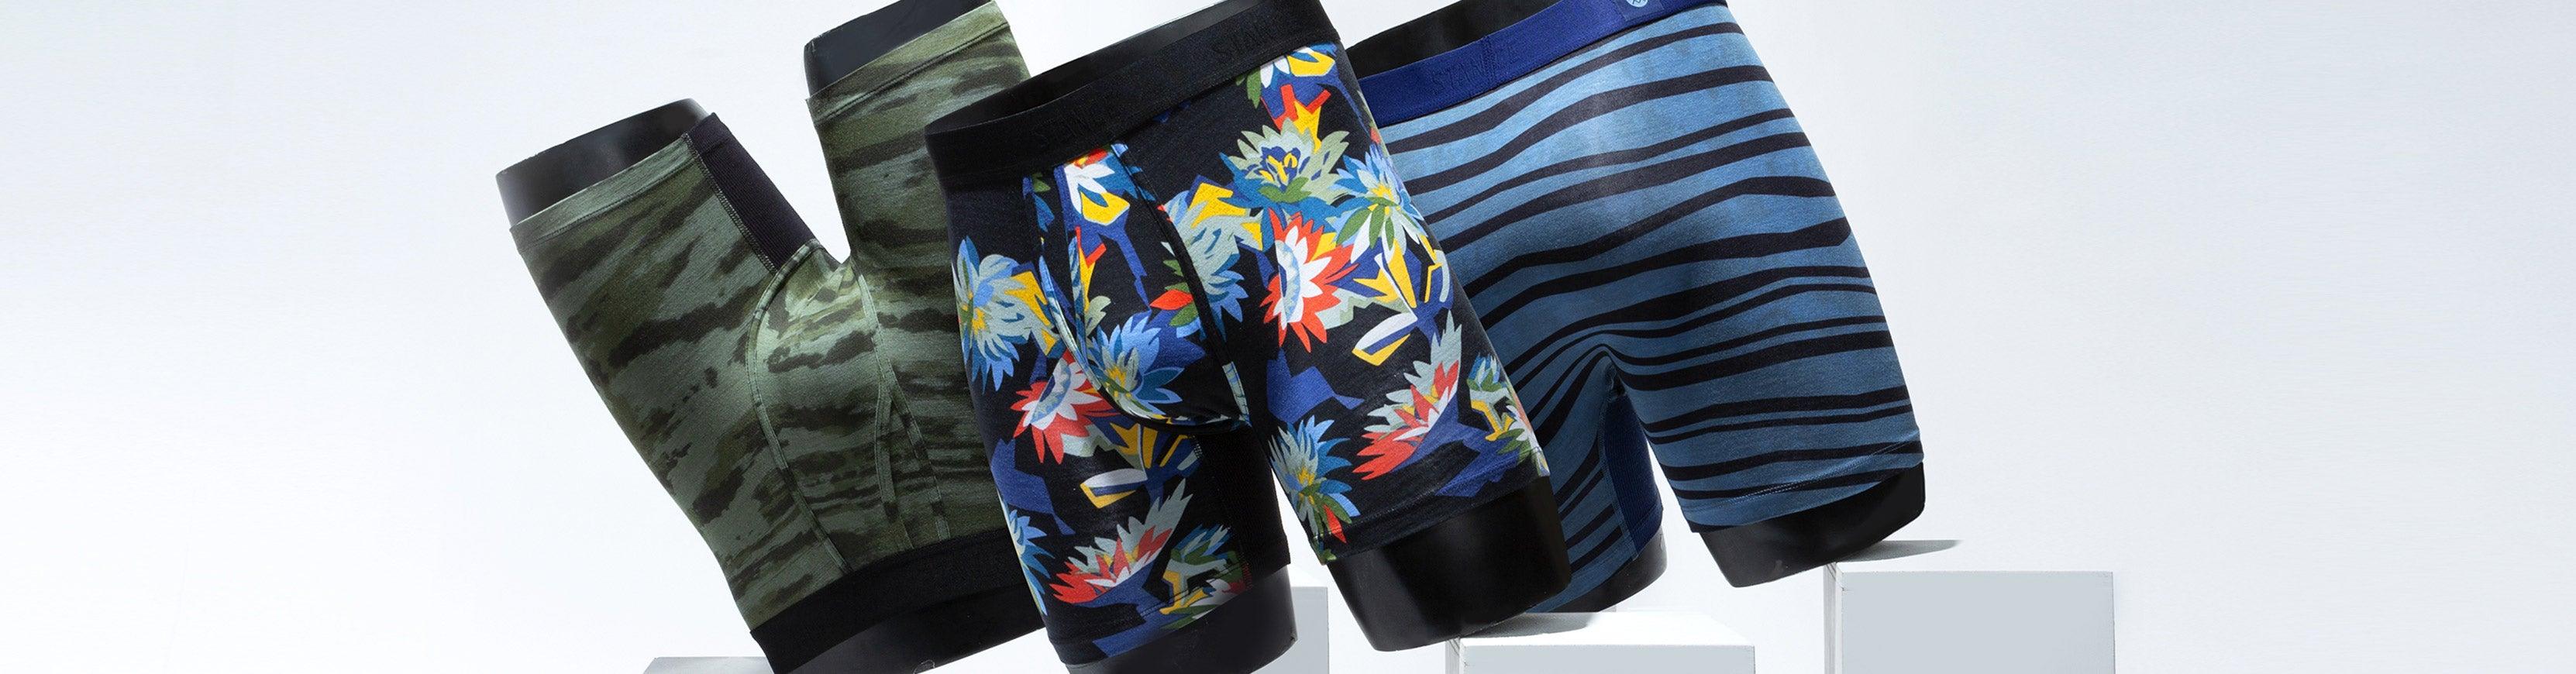 Comfort Republic – Comfortable Underwear for Men - Blog Belanja